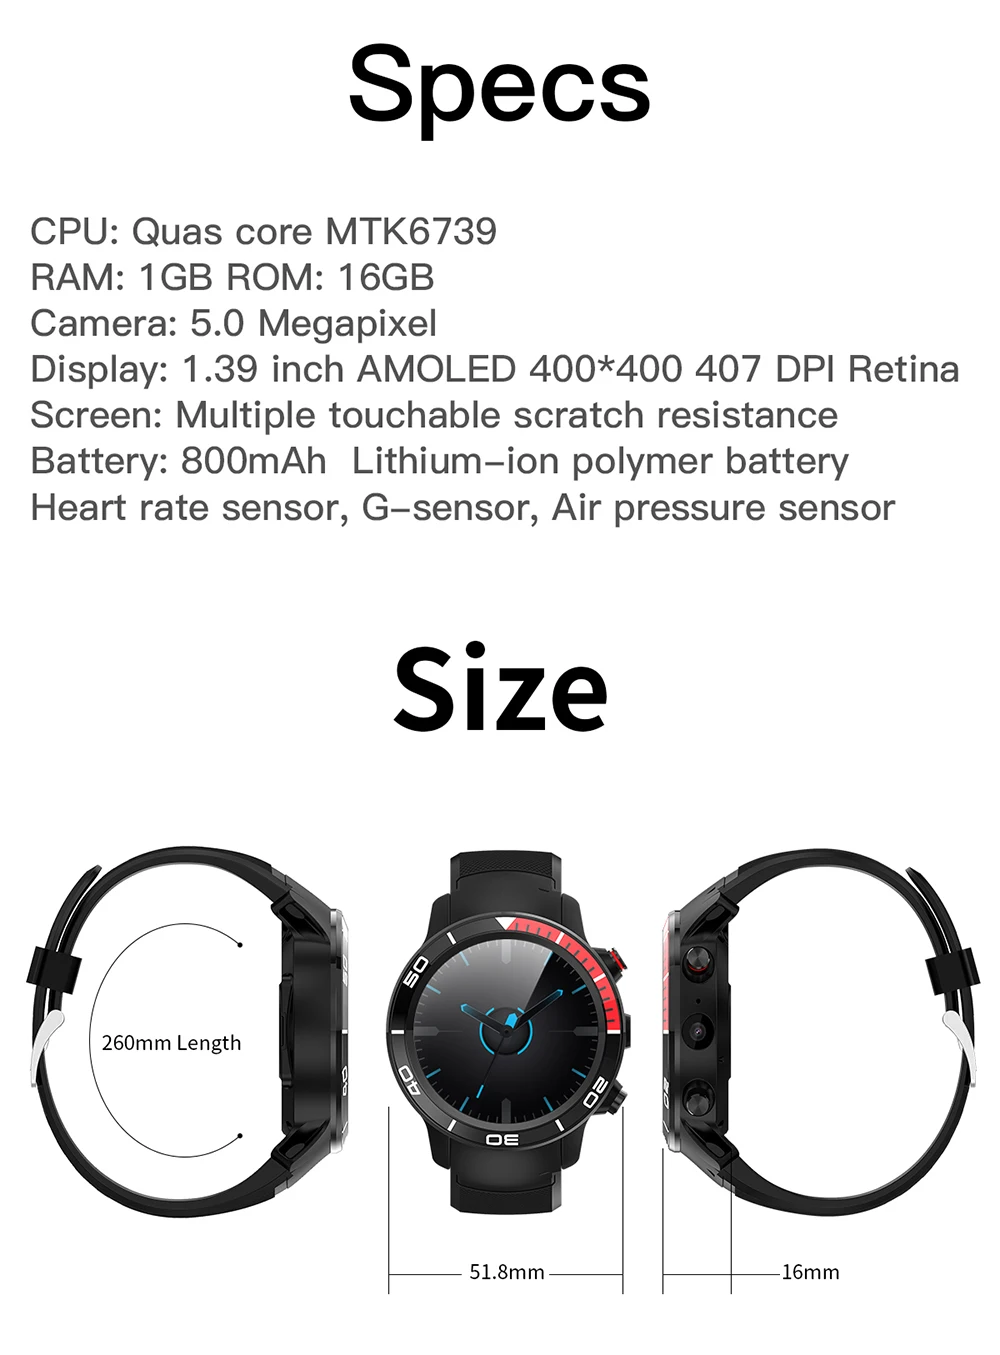 FocuSmart, новинка, 4G, Смарт-часы, Android 7,1, поддержка gps, wifi, 5MP камера, видео вызов, давление воздуха, IP68, водонепроницаемые Смарт-часы для мужчин